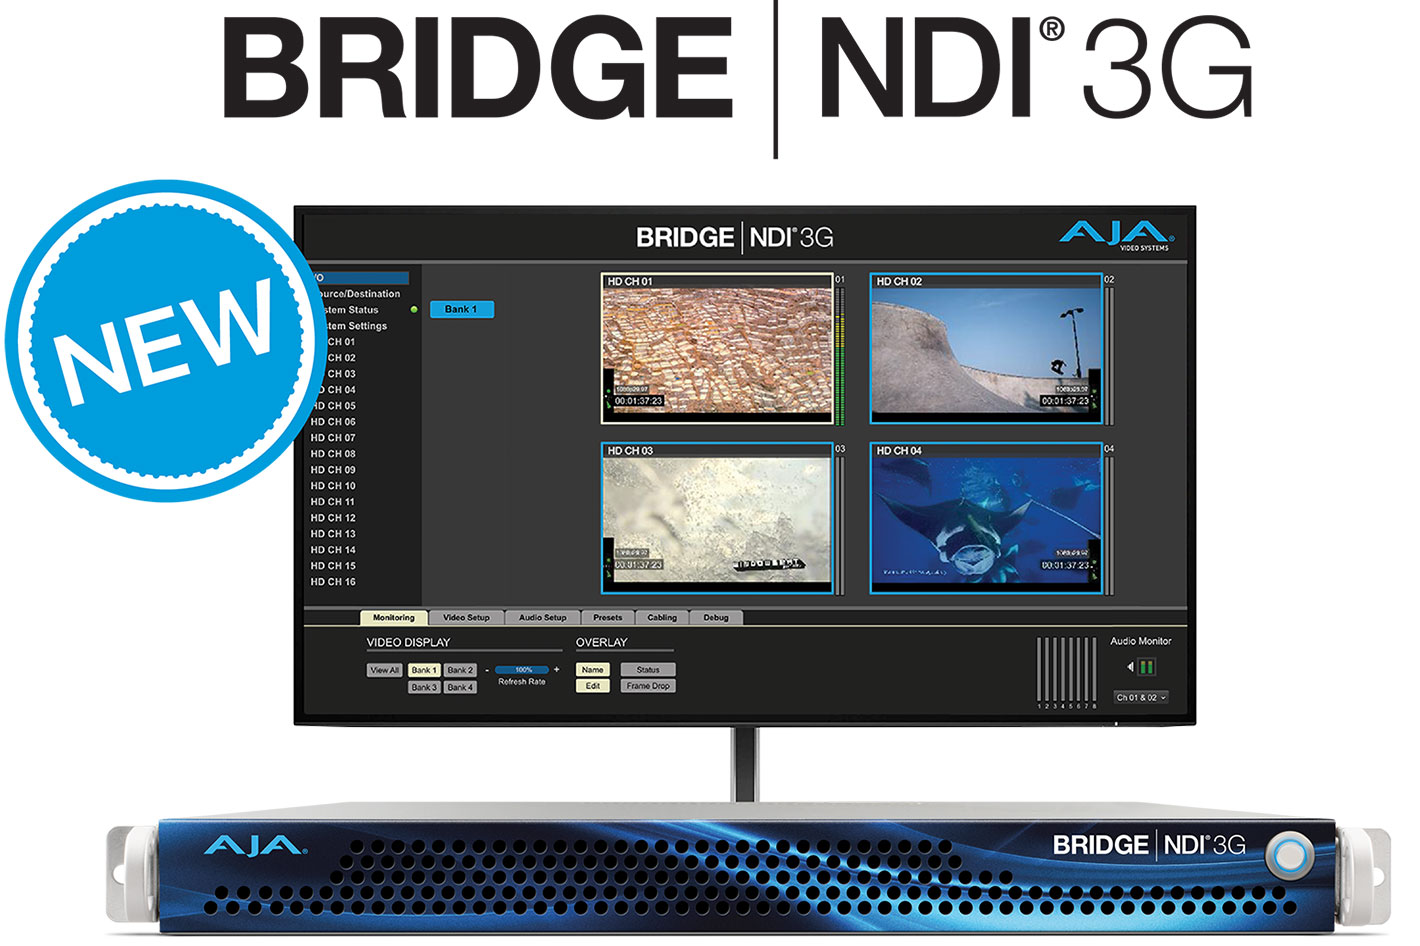 AJA debuts BRIDGE NDI 3G for NDI/SDI conversion